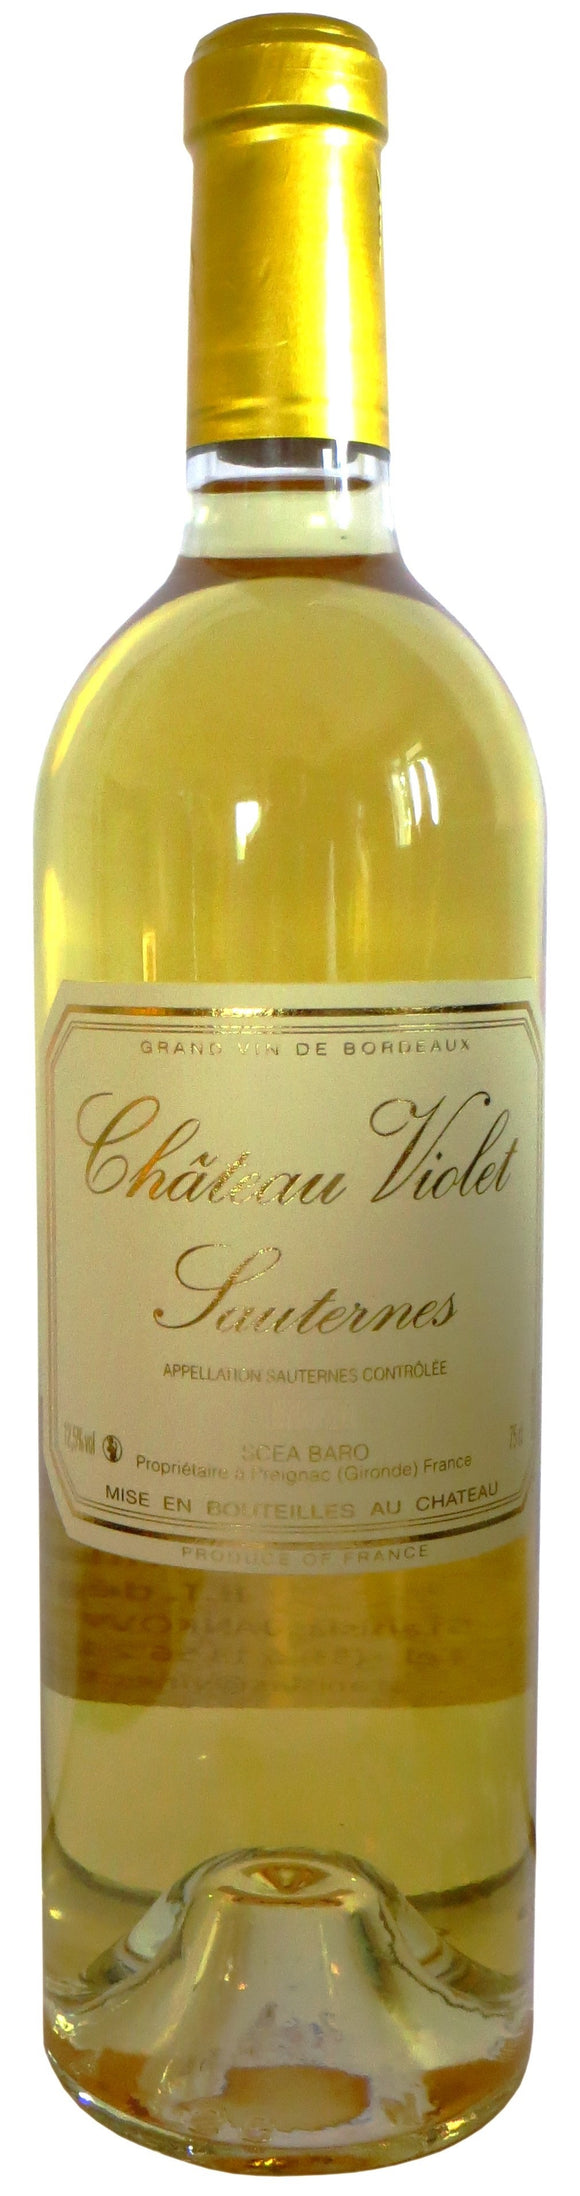 Chateau Violet Sauternes (half bottle) 2016